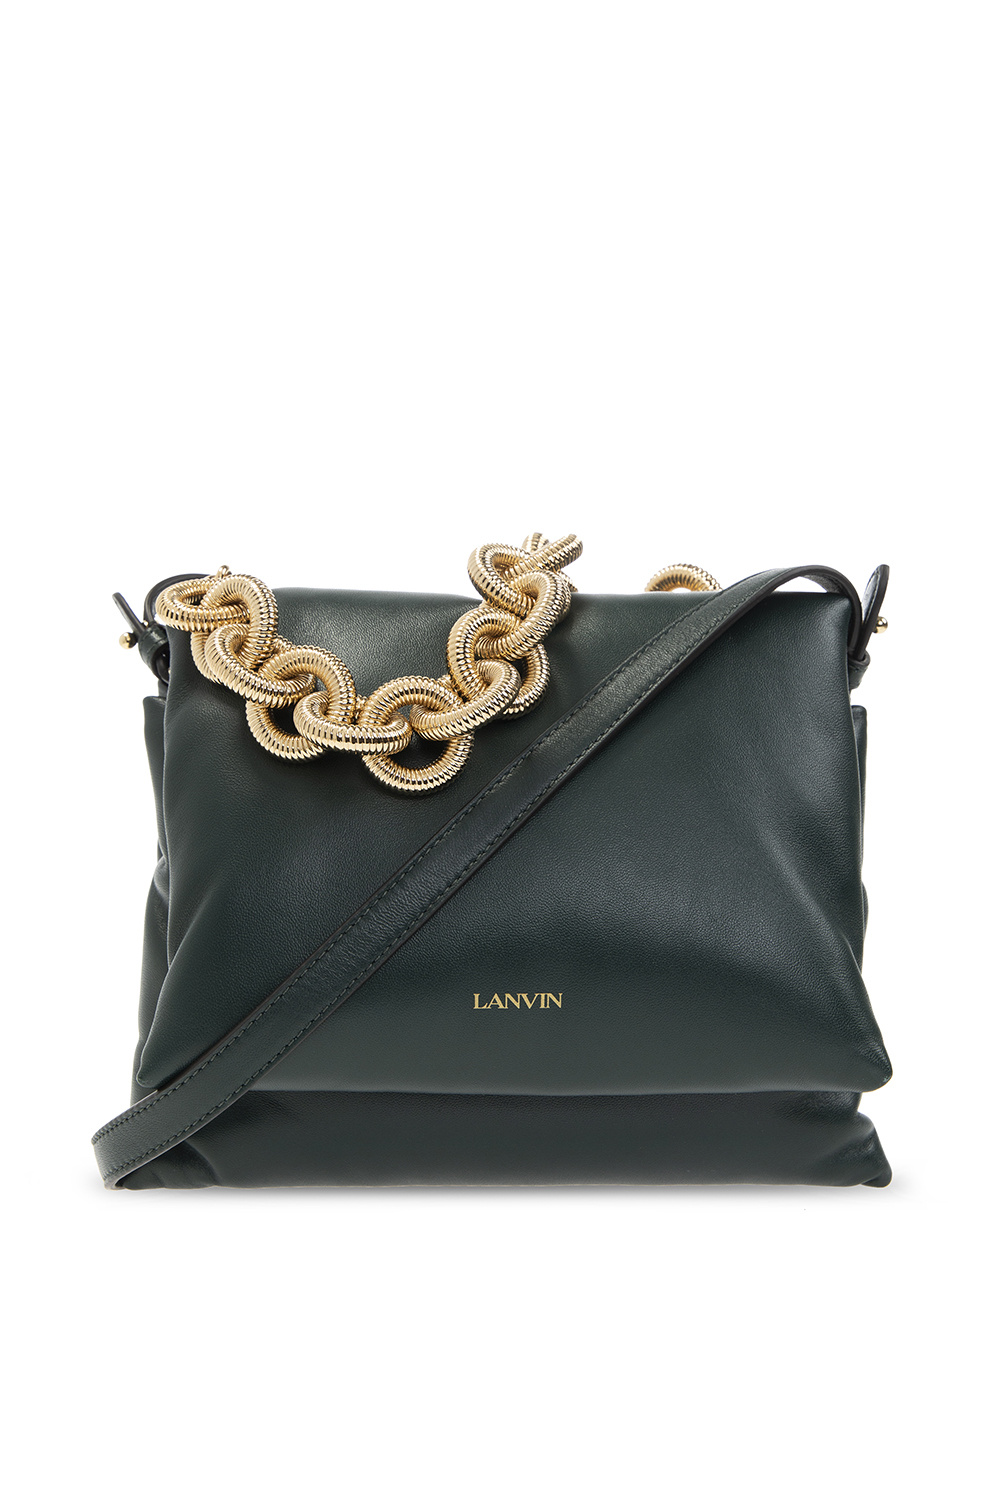 Lanvin ‘Sugar Small’ shoulder Tommy bag